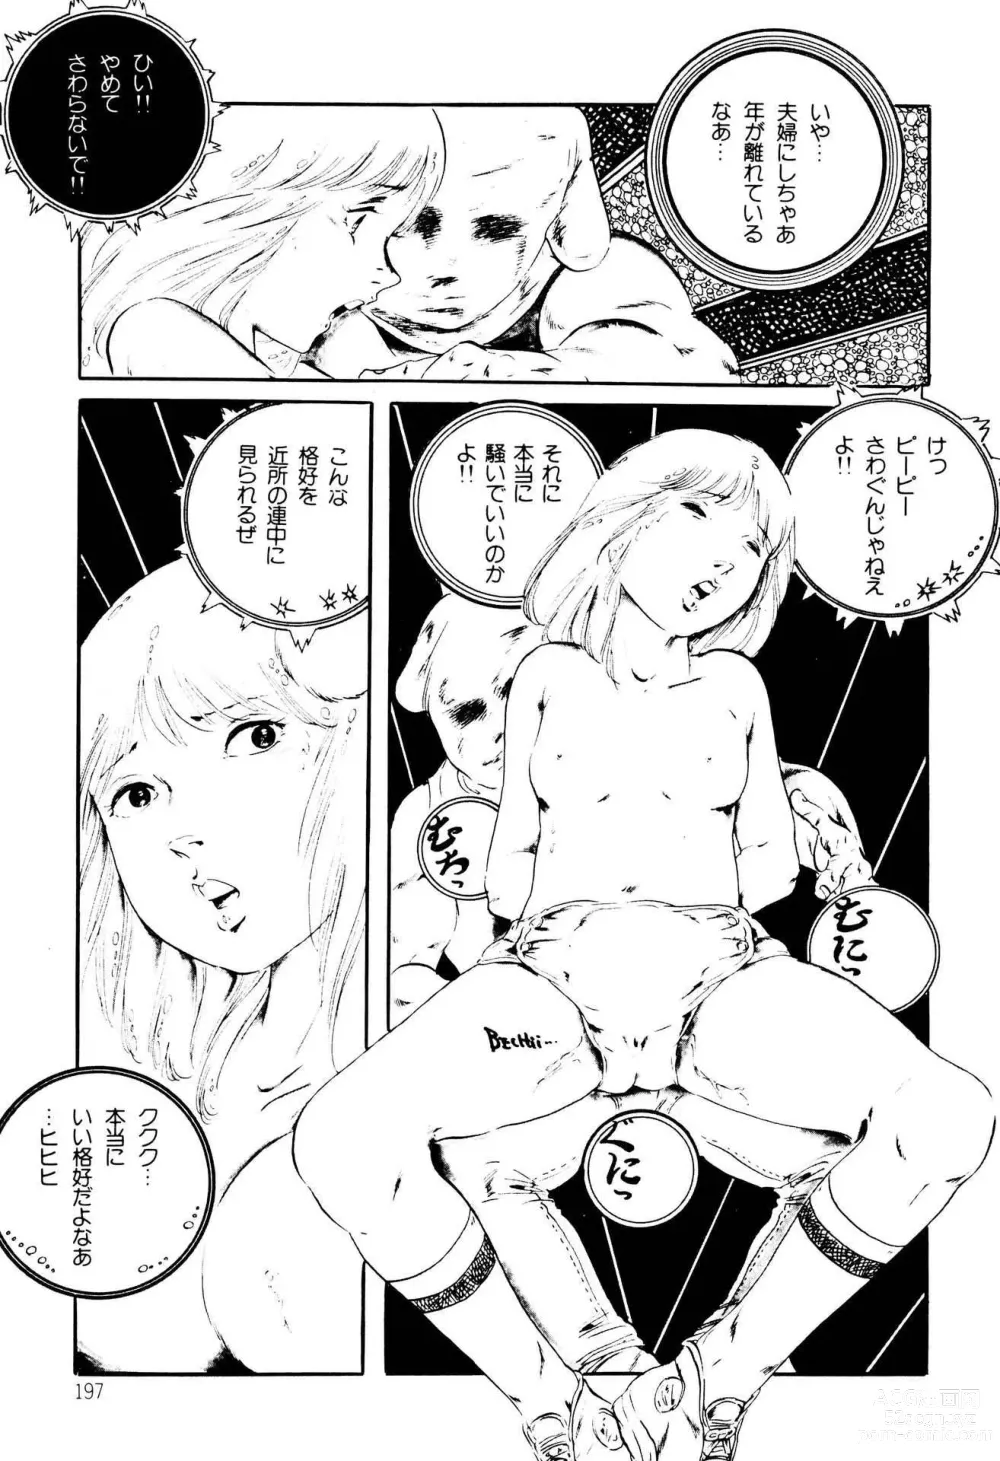 Page 197 of manga Kimamana Yousei